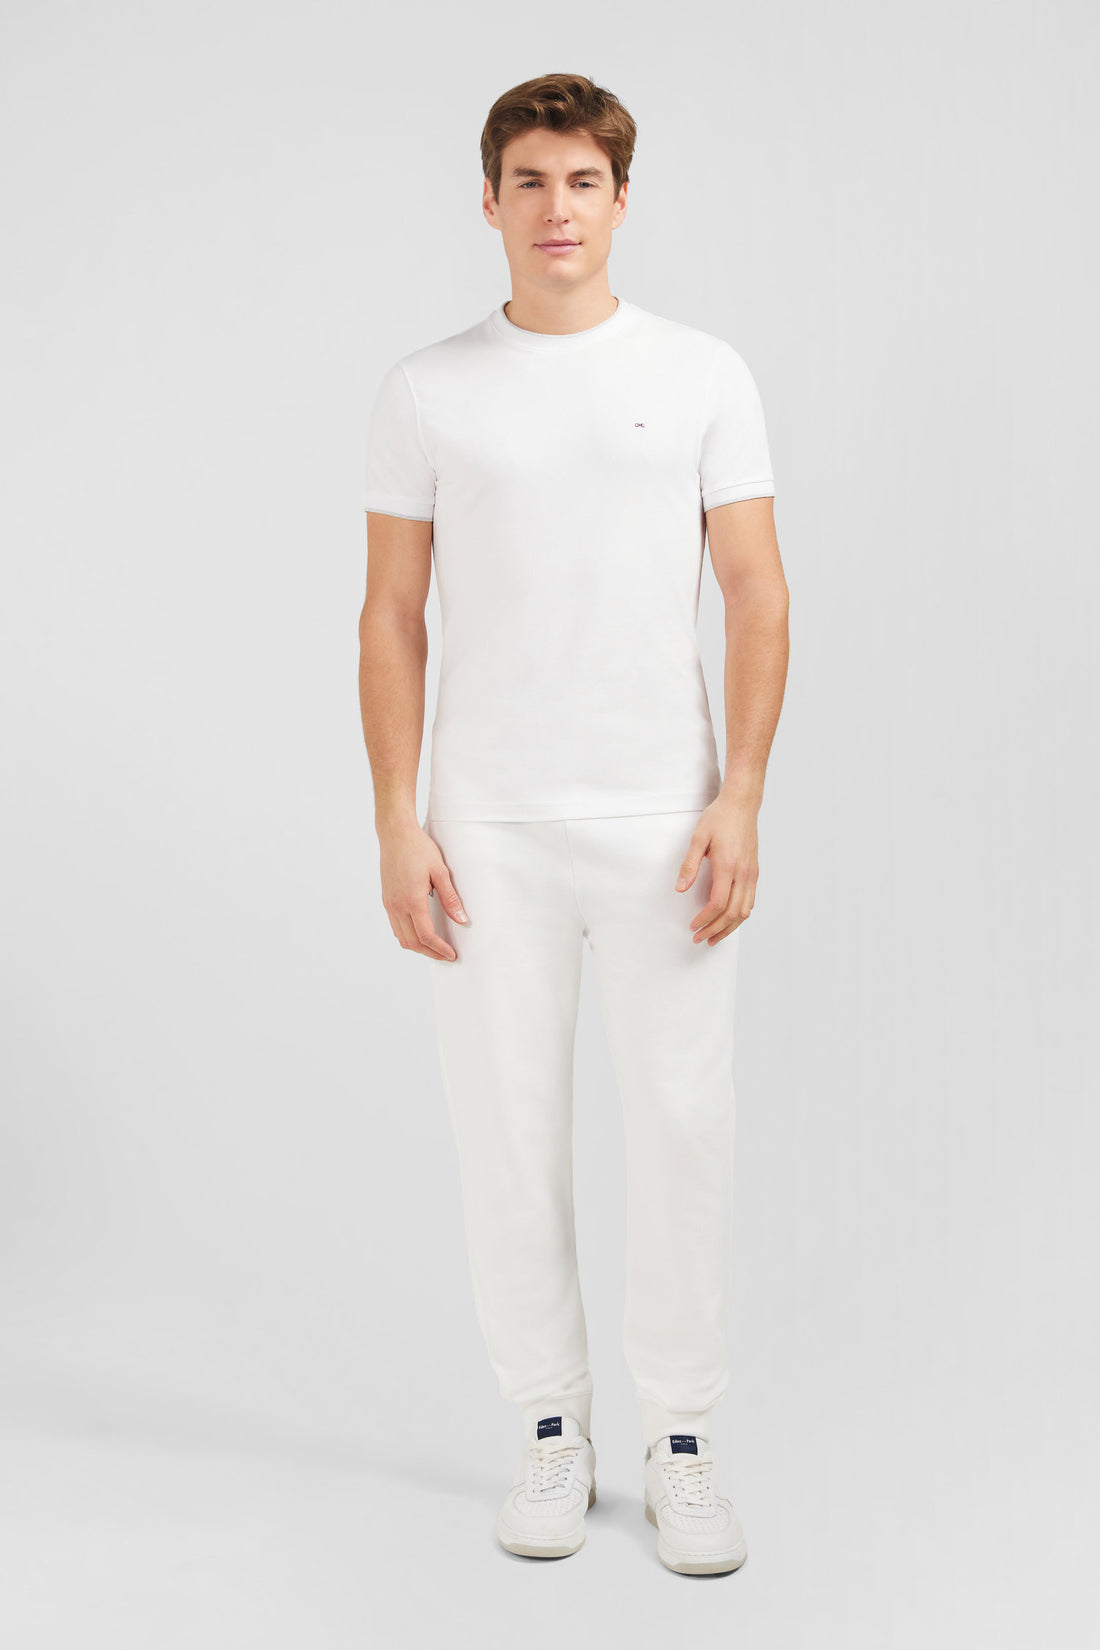 Plain White Short-Sleeved T-Shirt_E24MAITC0010_BC_01